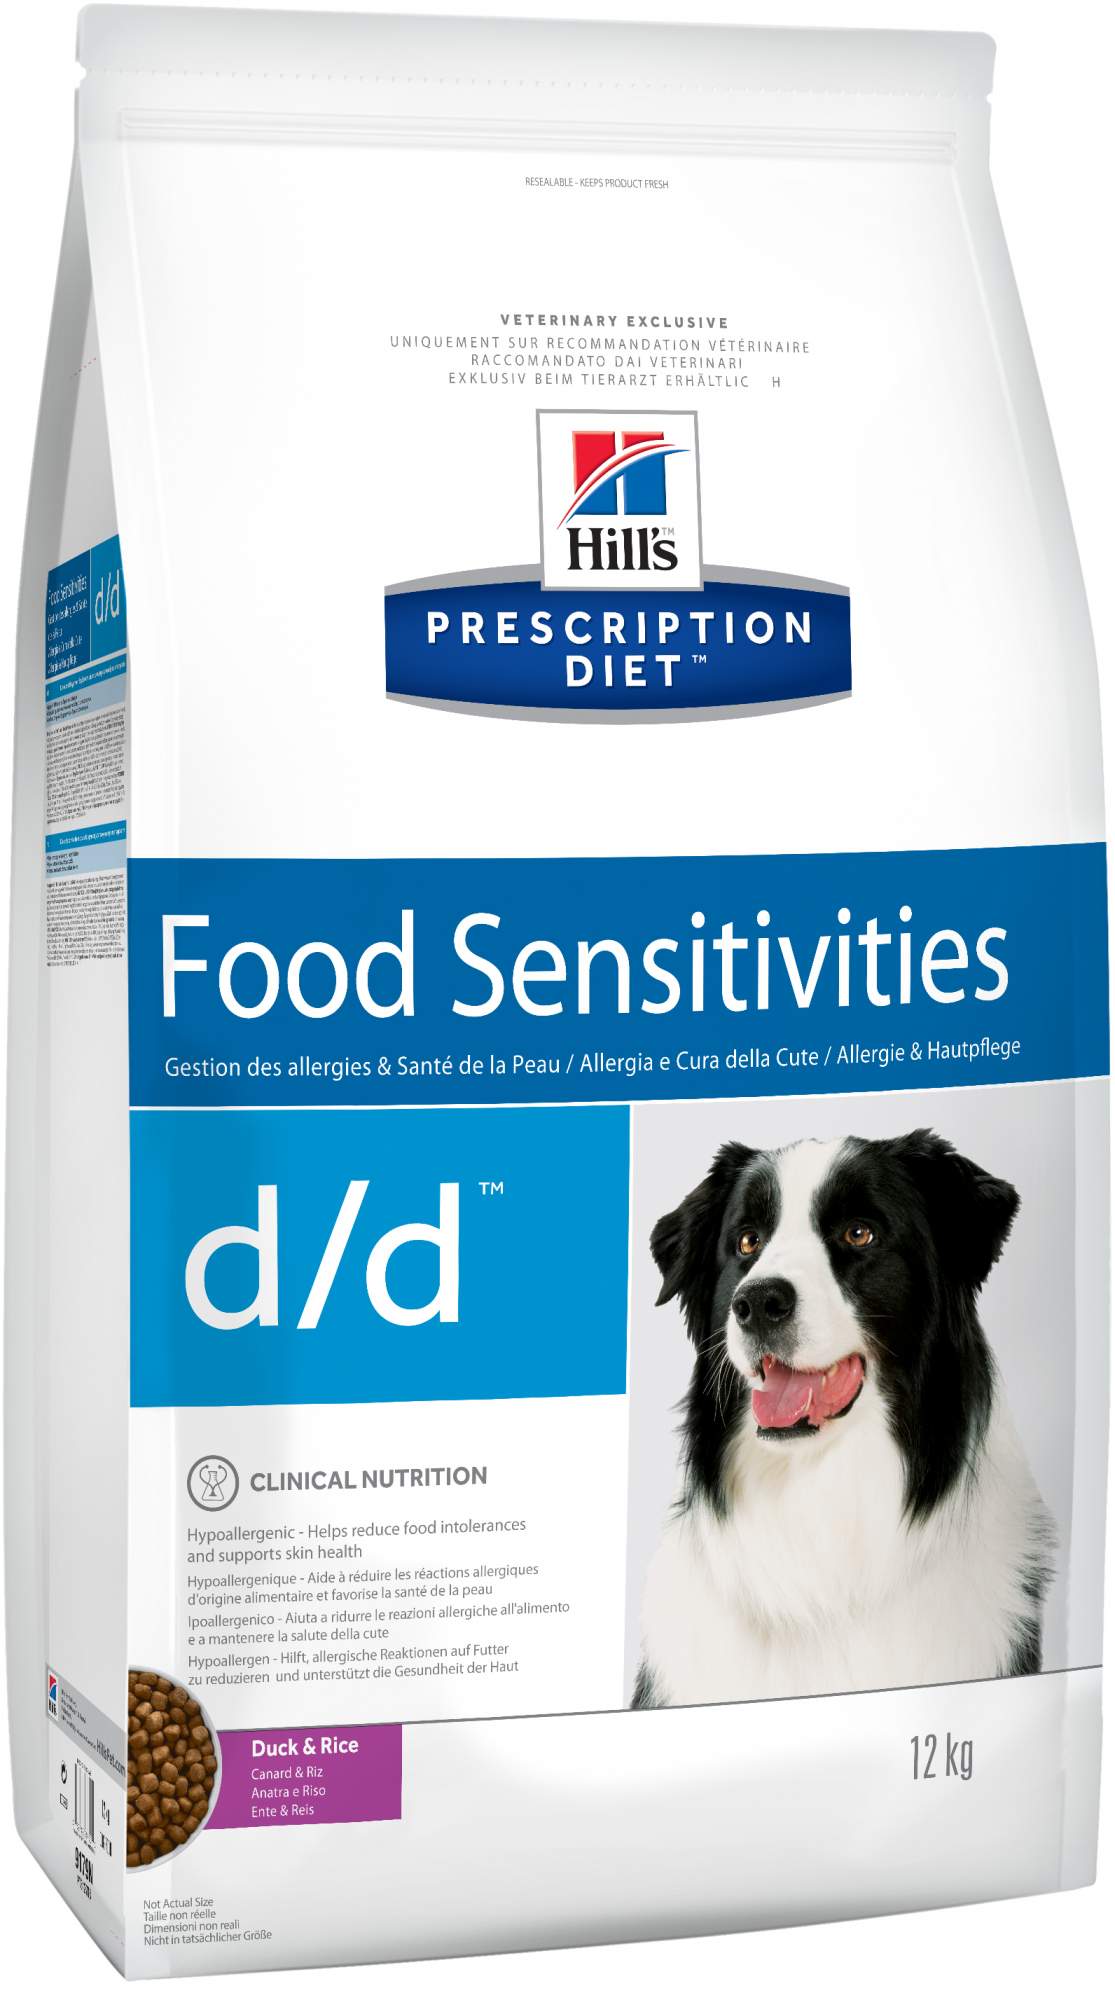 Сухой корм для собак Hill's Prescription Diet d/d Food Sensitivities, утка, 12кг